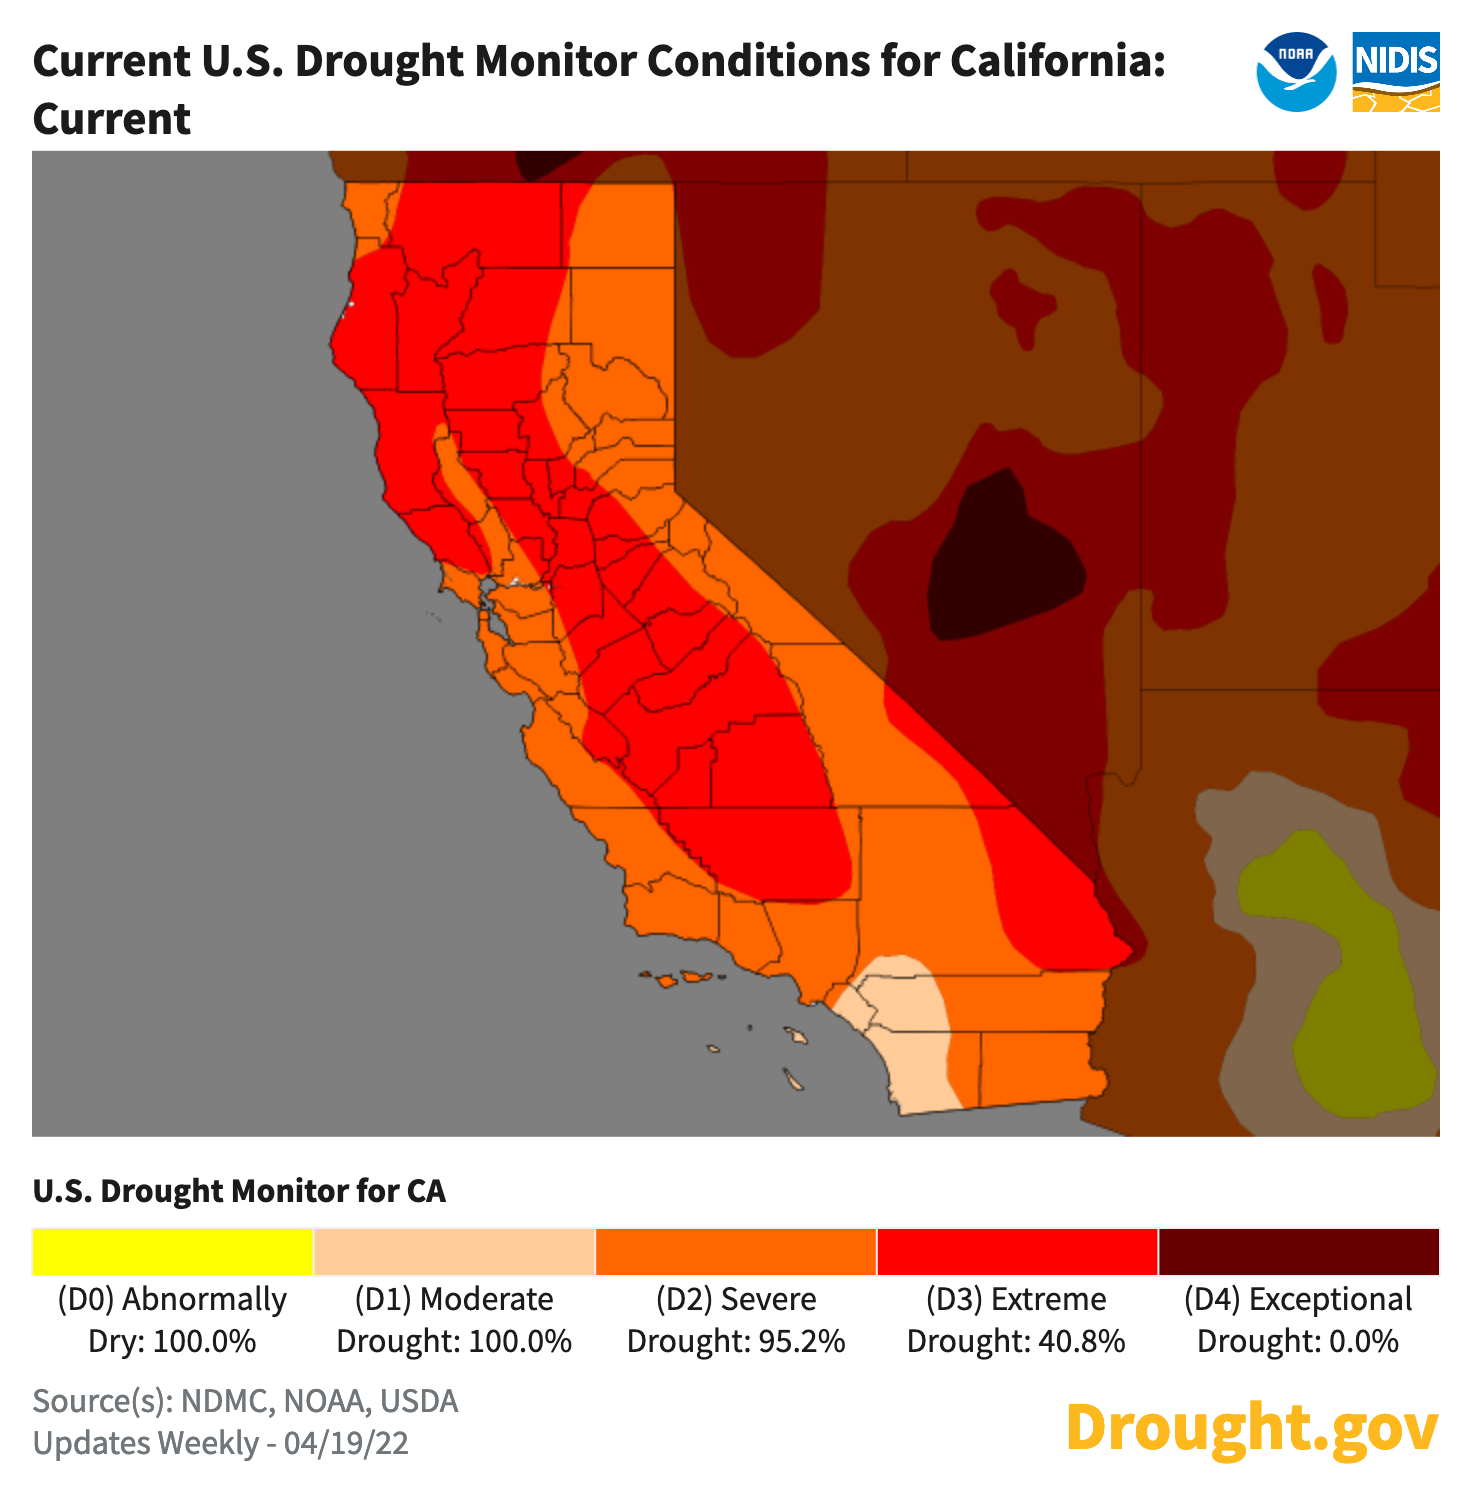 Condiciones de sequía en California para la semana del 19 de abril